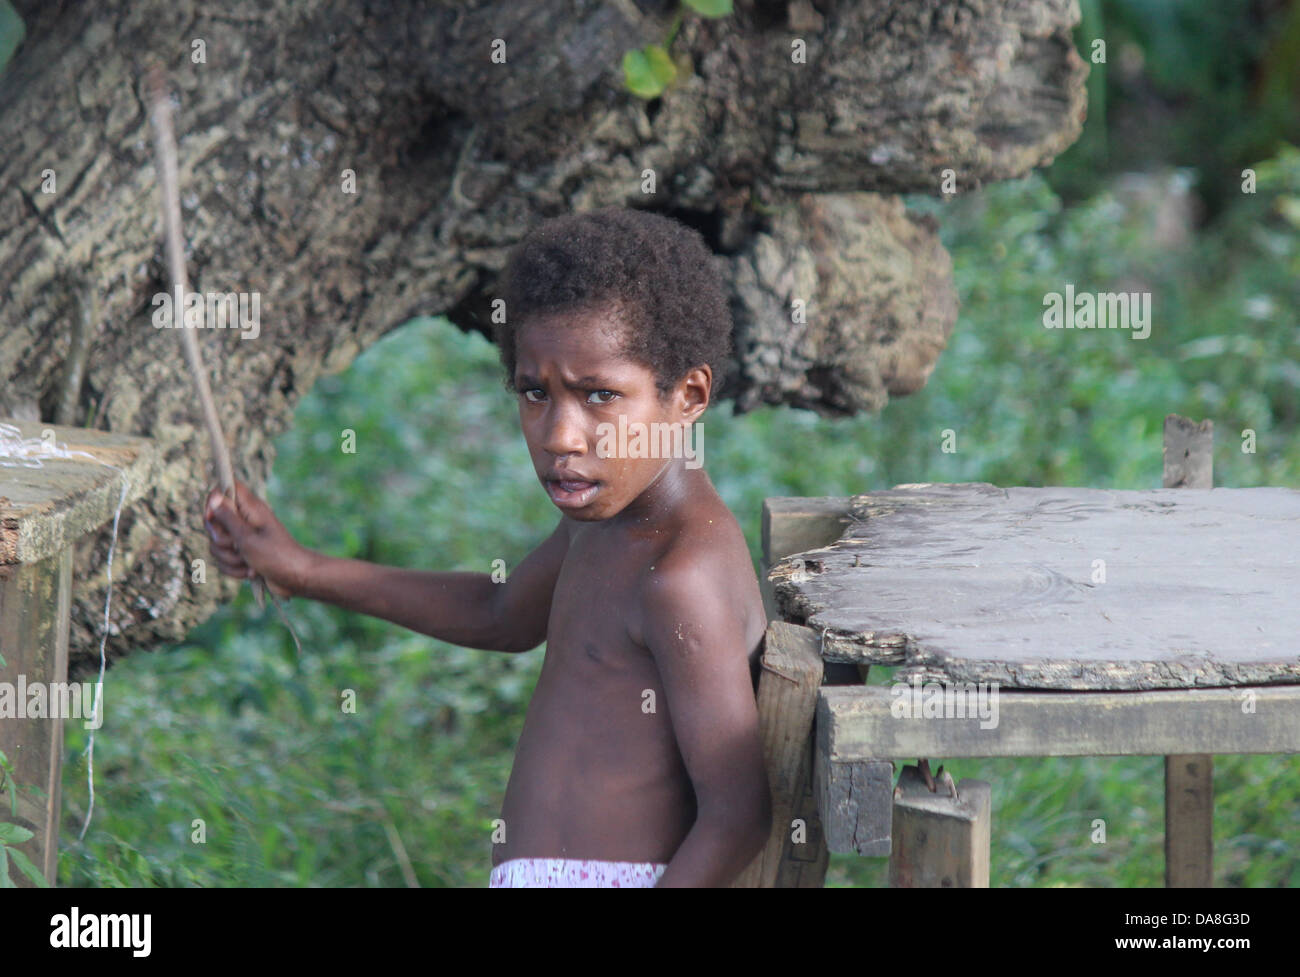 island boy with stick Stock Photo - Alamy